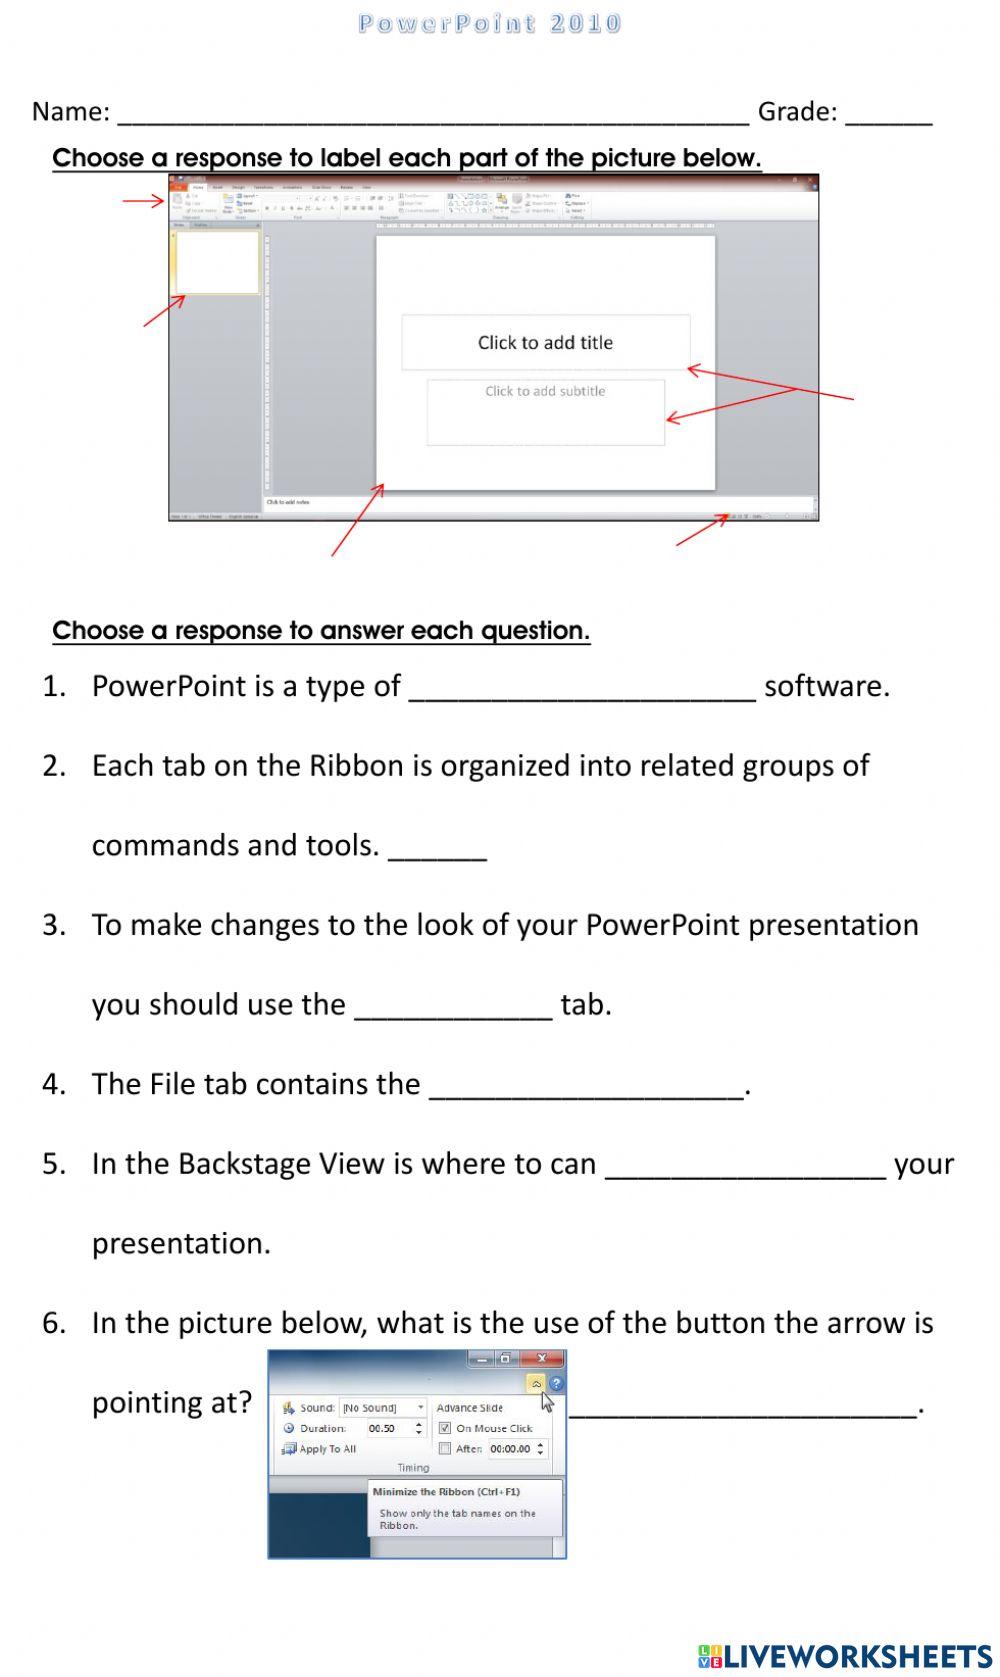 PowerPoint 2010 Beginner Quiz